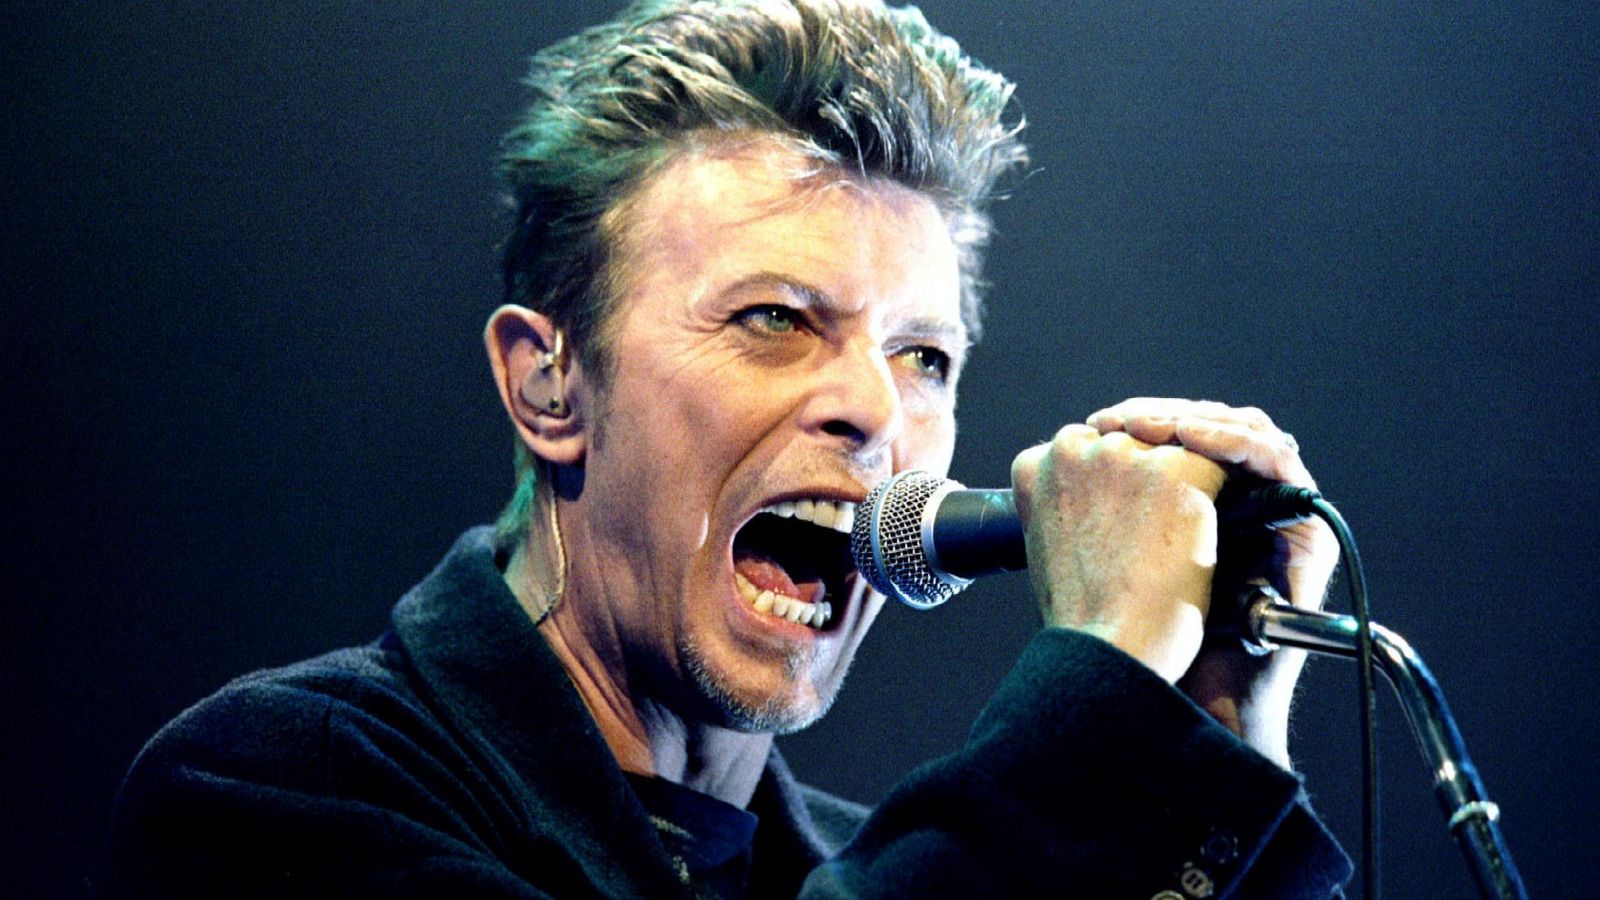 Davida Bowieho vyhlásili za najvplyvnejšieho britského umelca uplynulého polstoročia